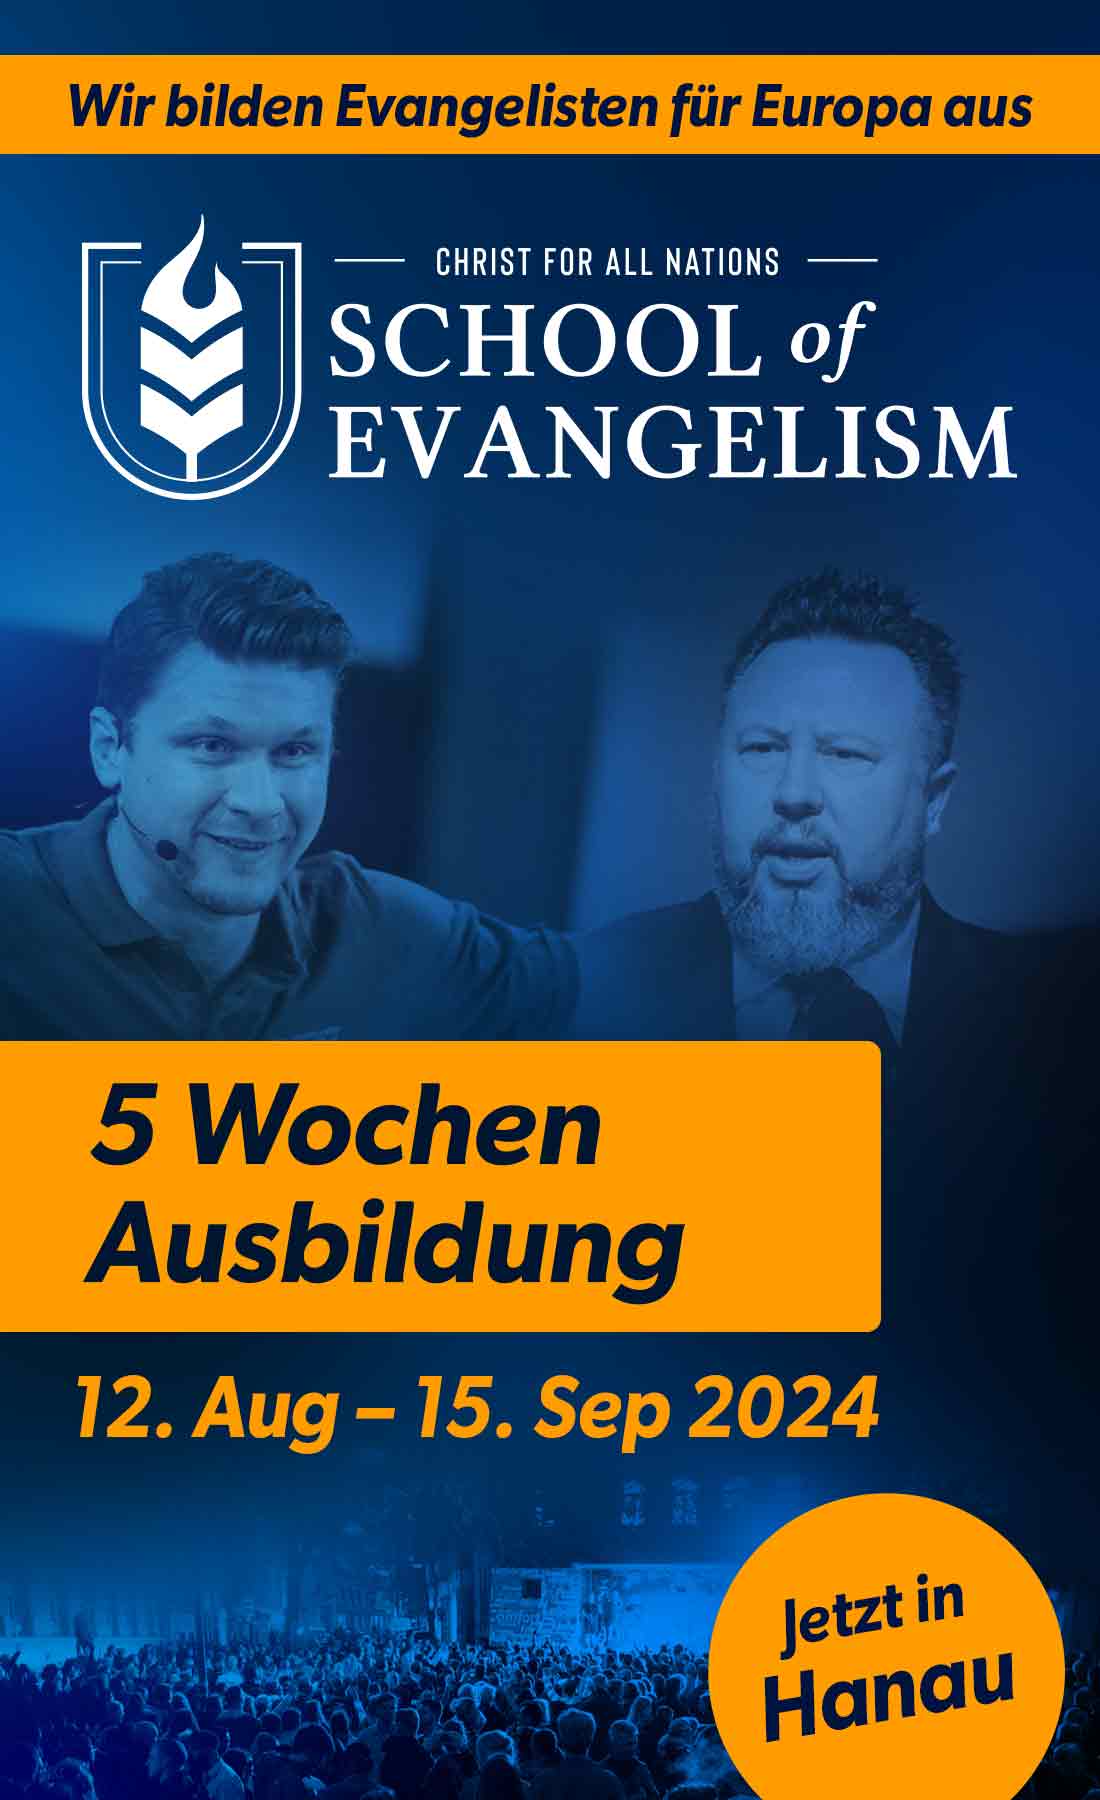 School of Evangelism mit Daniel Kolenda und Levi Lutz